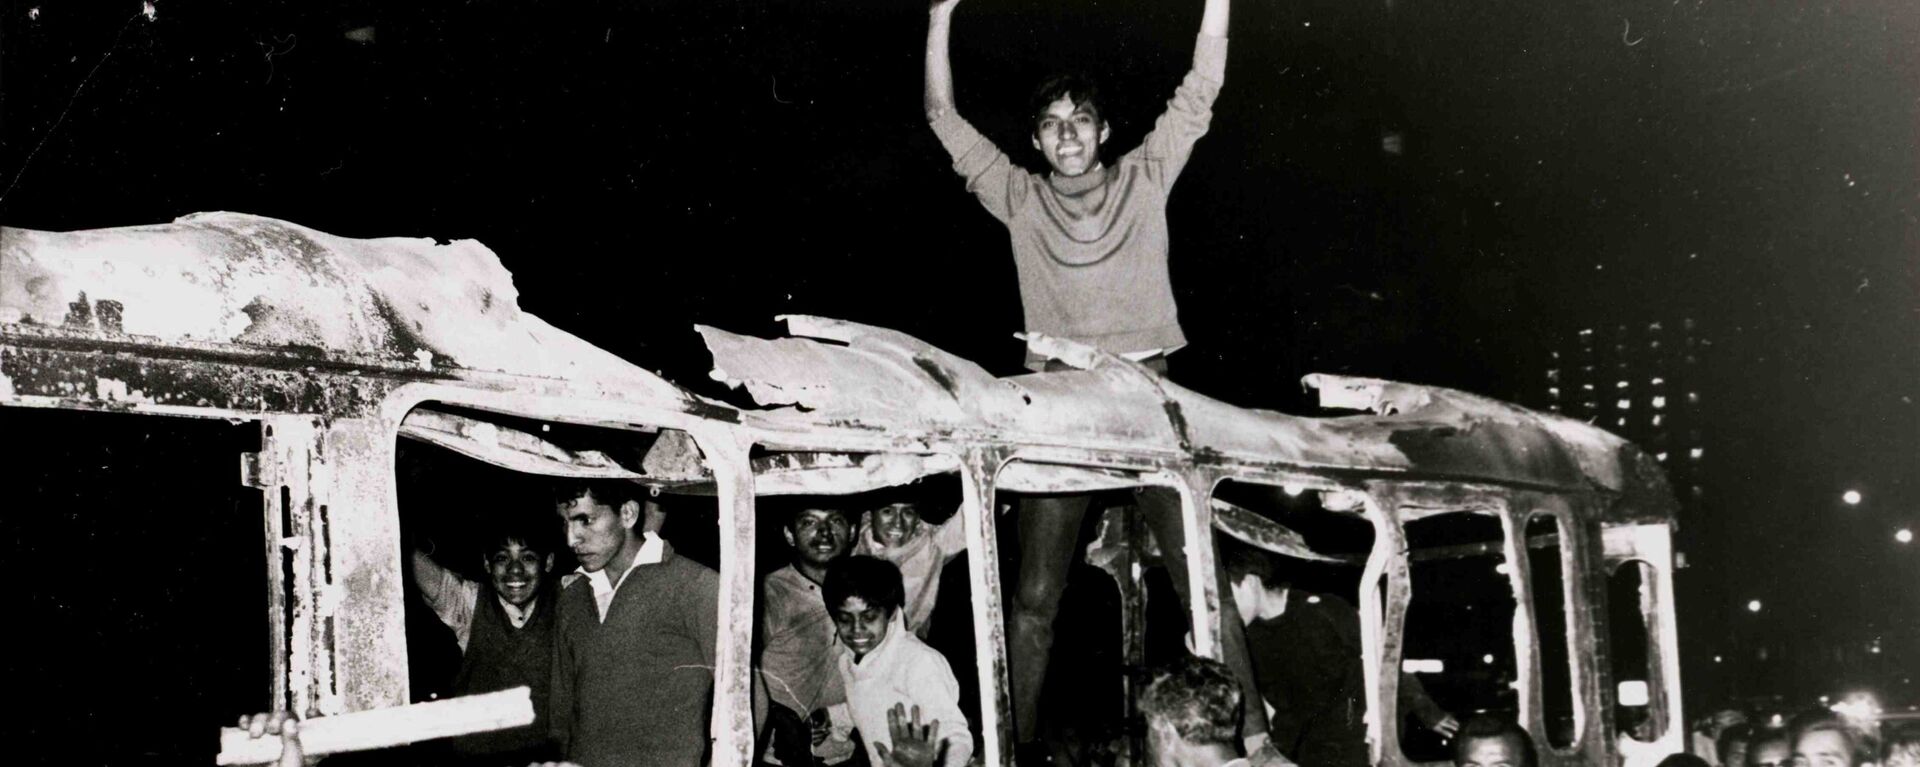 Estudiantes sobre cammión quemado durante las protestas de 1968 en México (archivo) - Sputnik Mundo, 1920, 02.10.2020